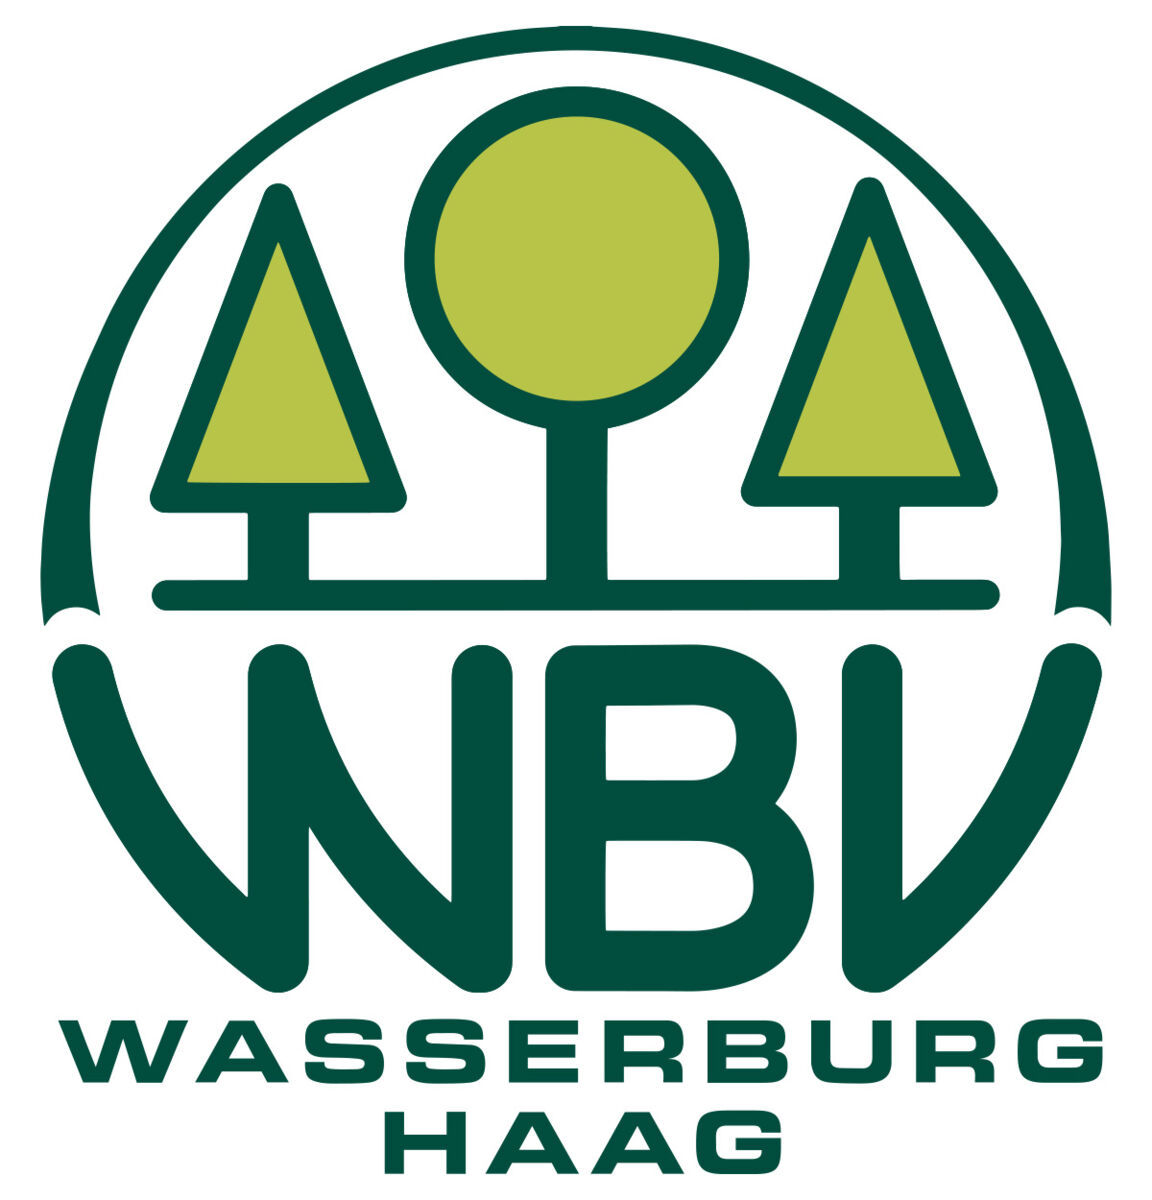 Waldbesitzervereingung Wasserburg-Haag w.V.